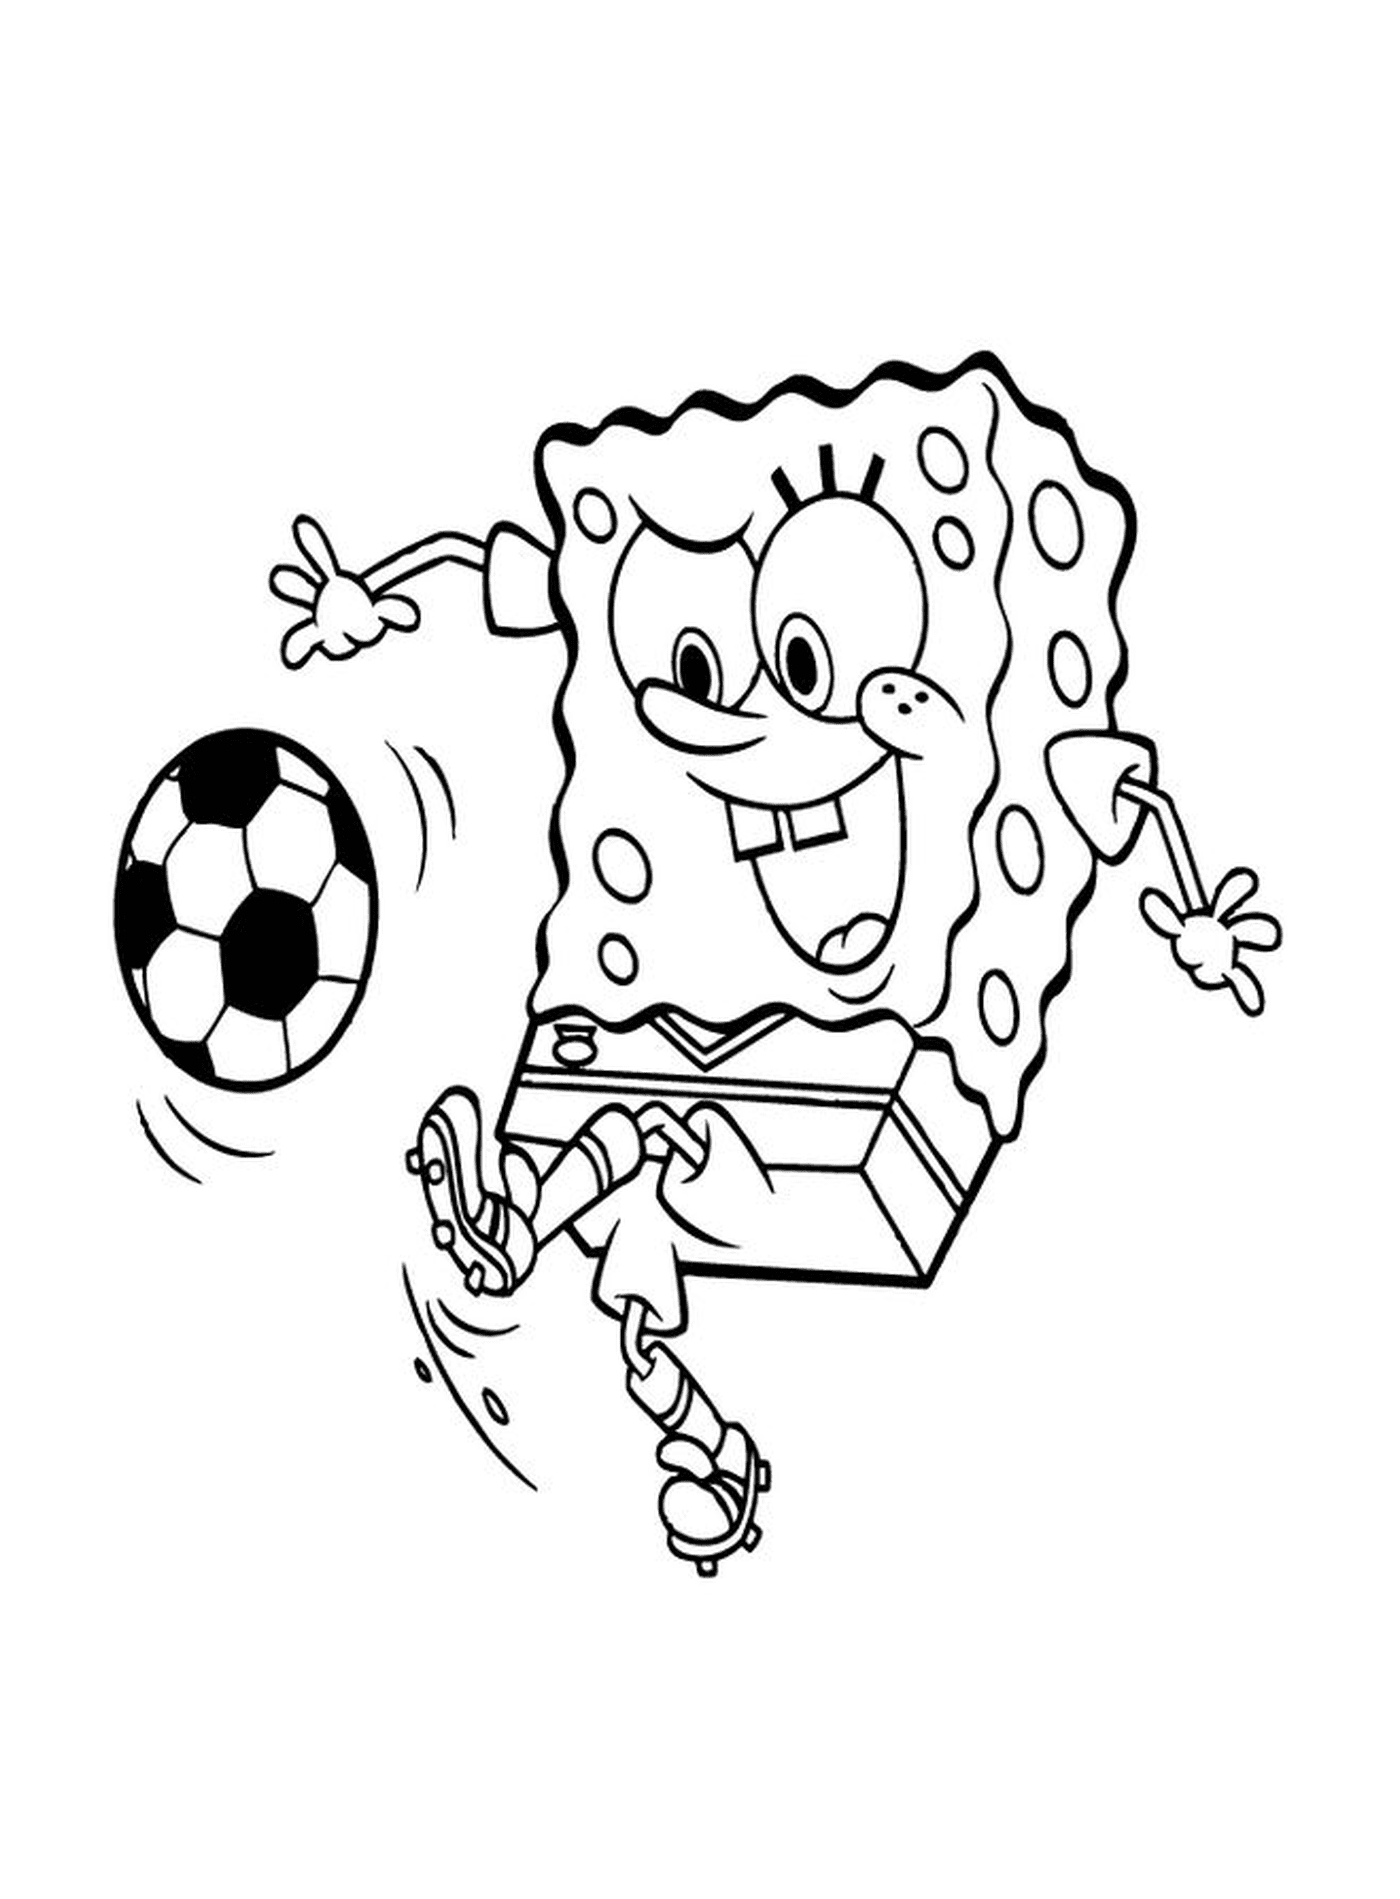  Губка боб, играющий в футбол 